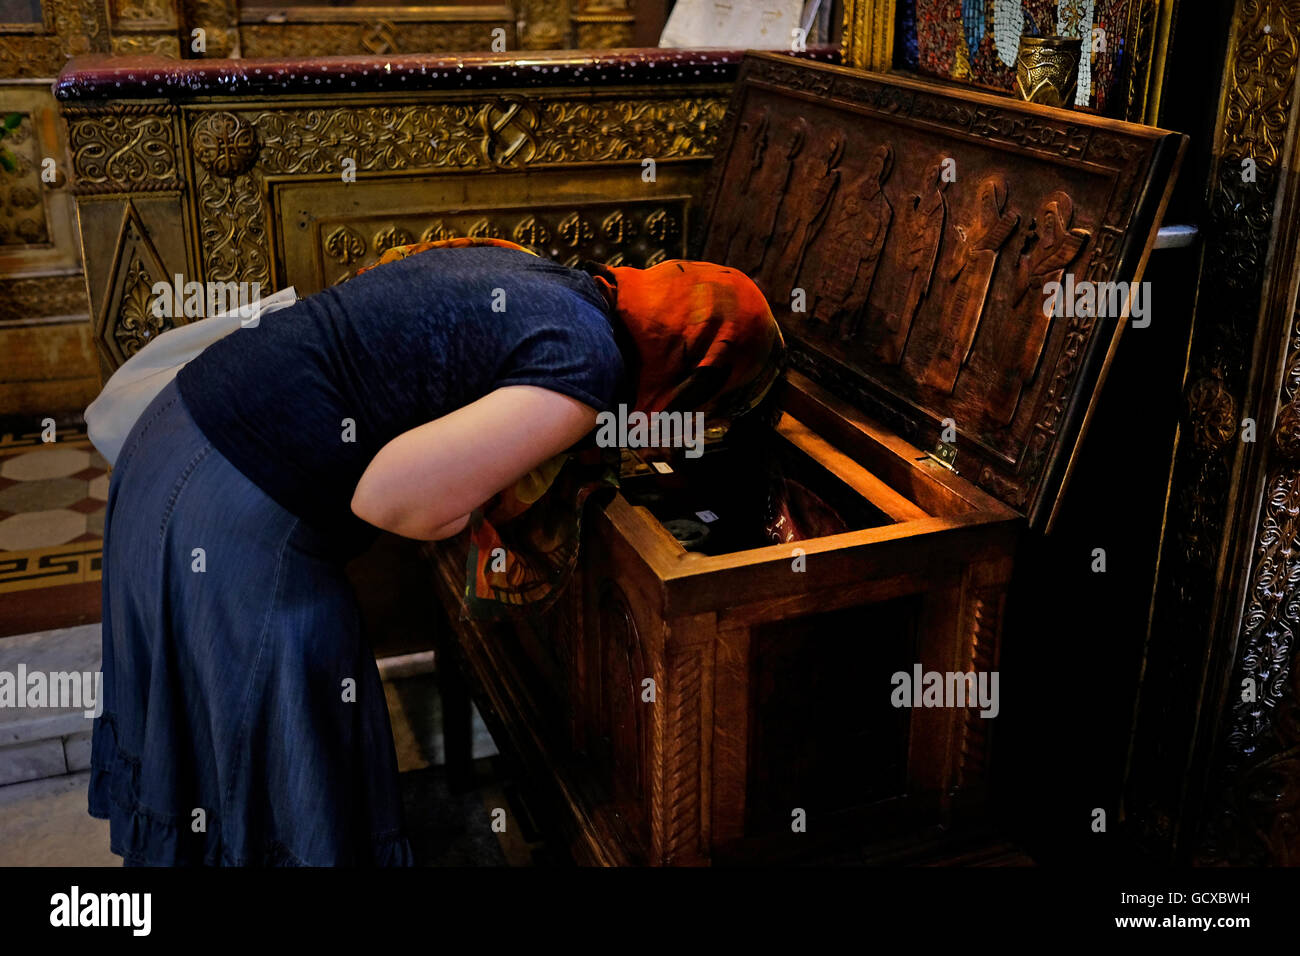 A Romanian Woman Praying Inside Saint Nicholas Russian Church